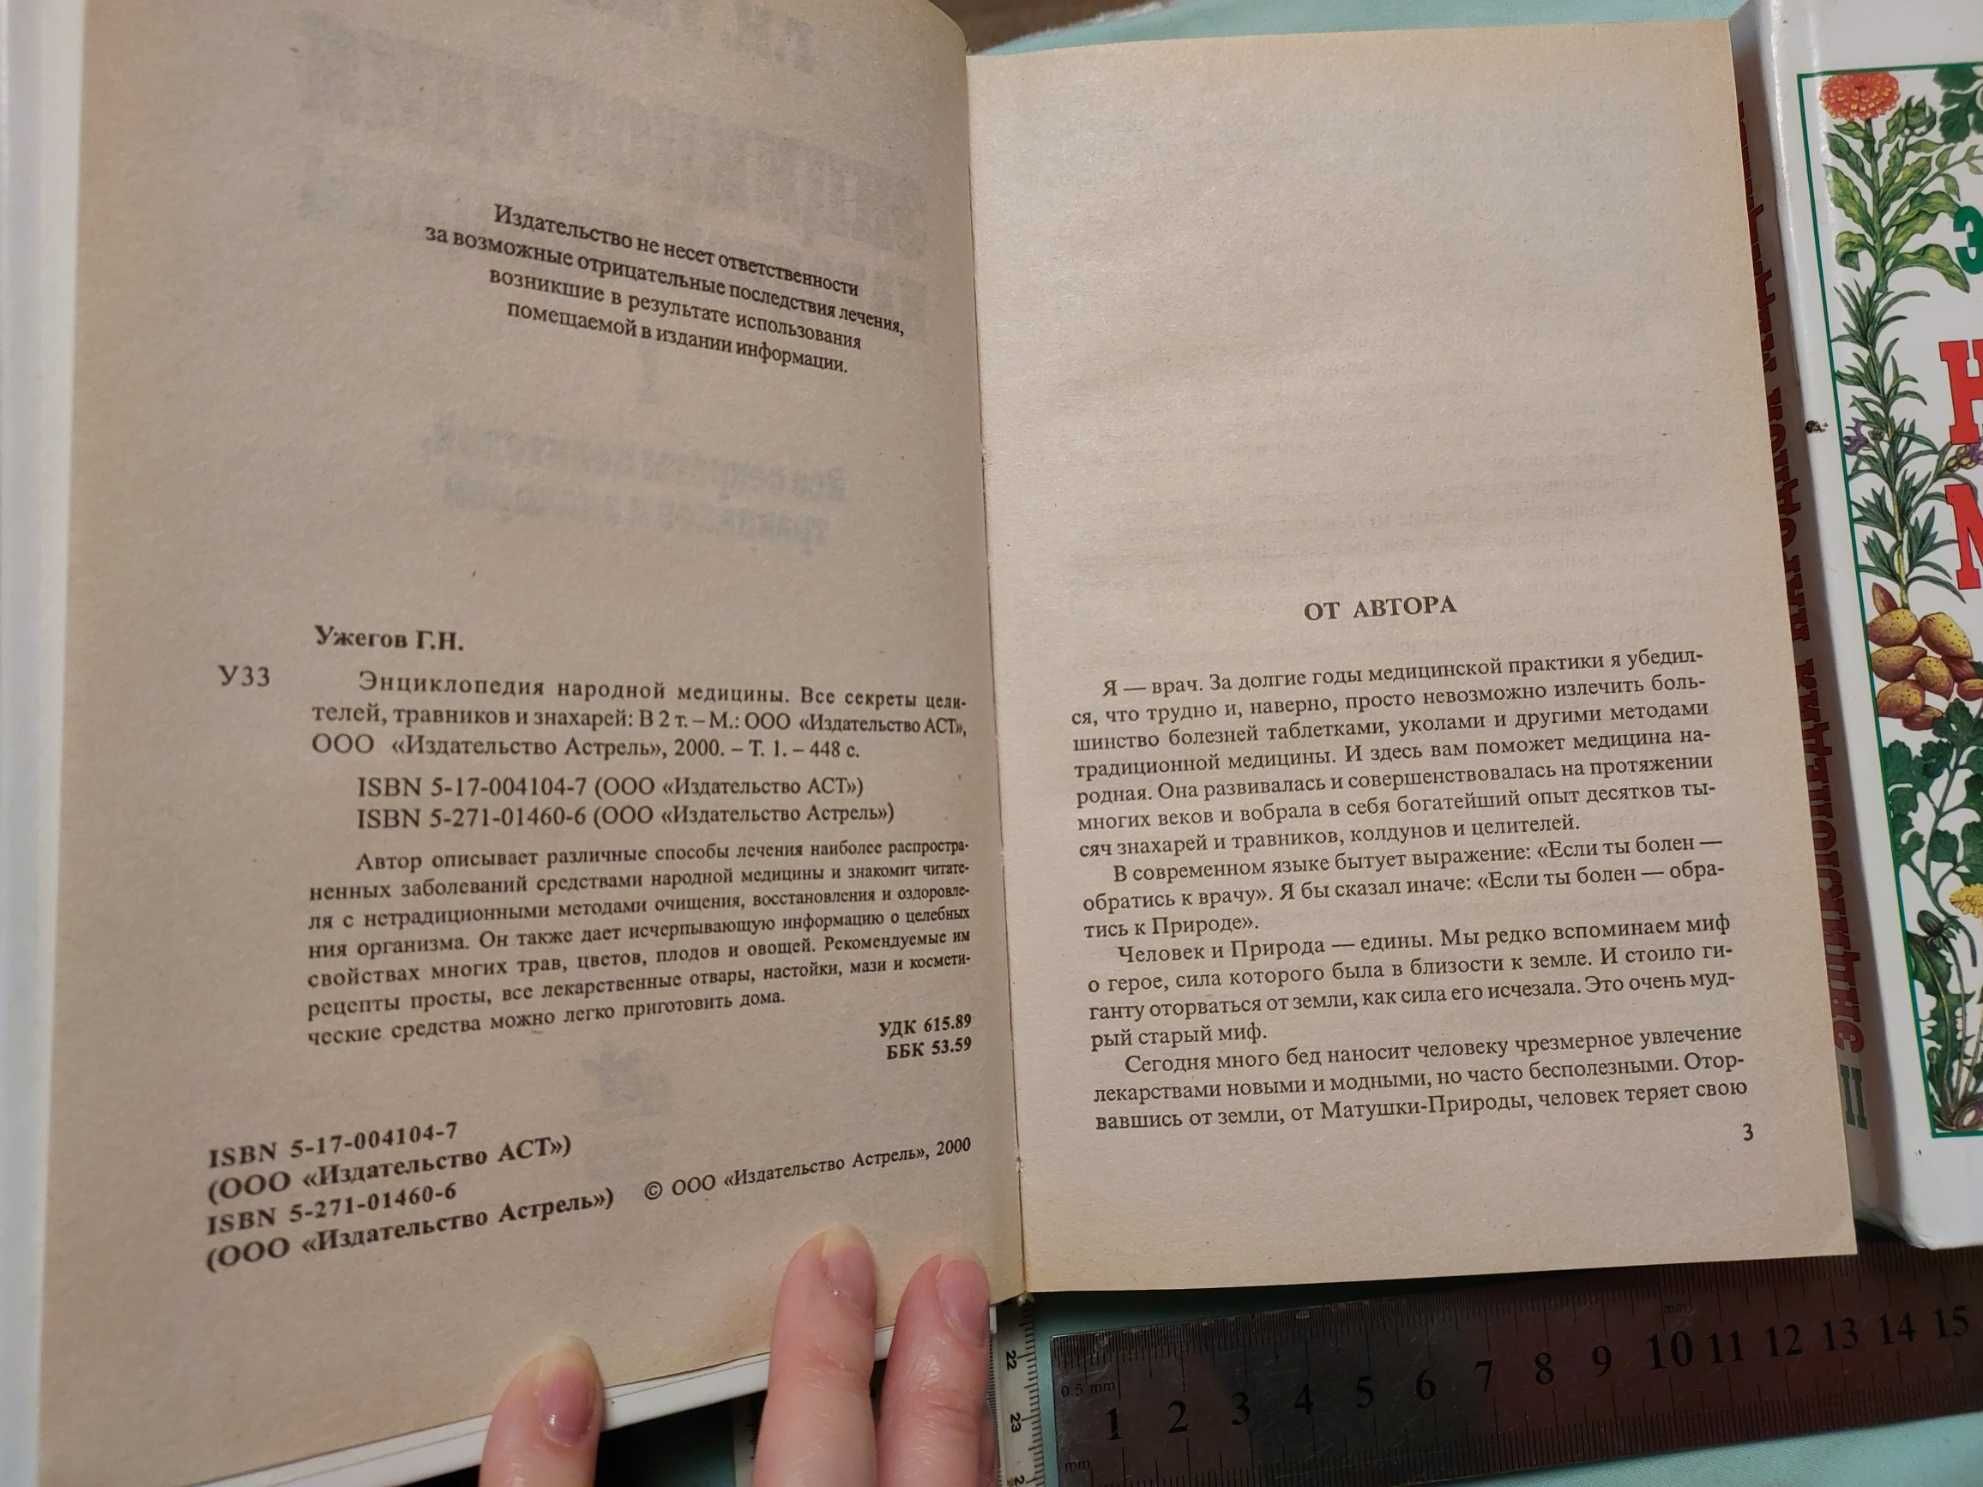 Энциклопедия народоной медицины 2 тома